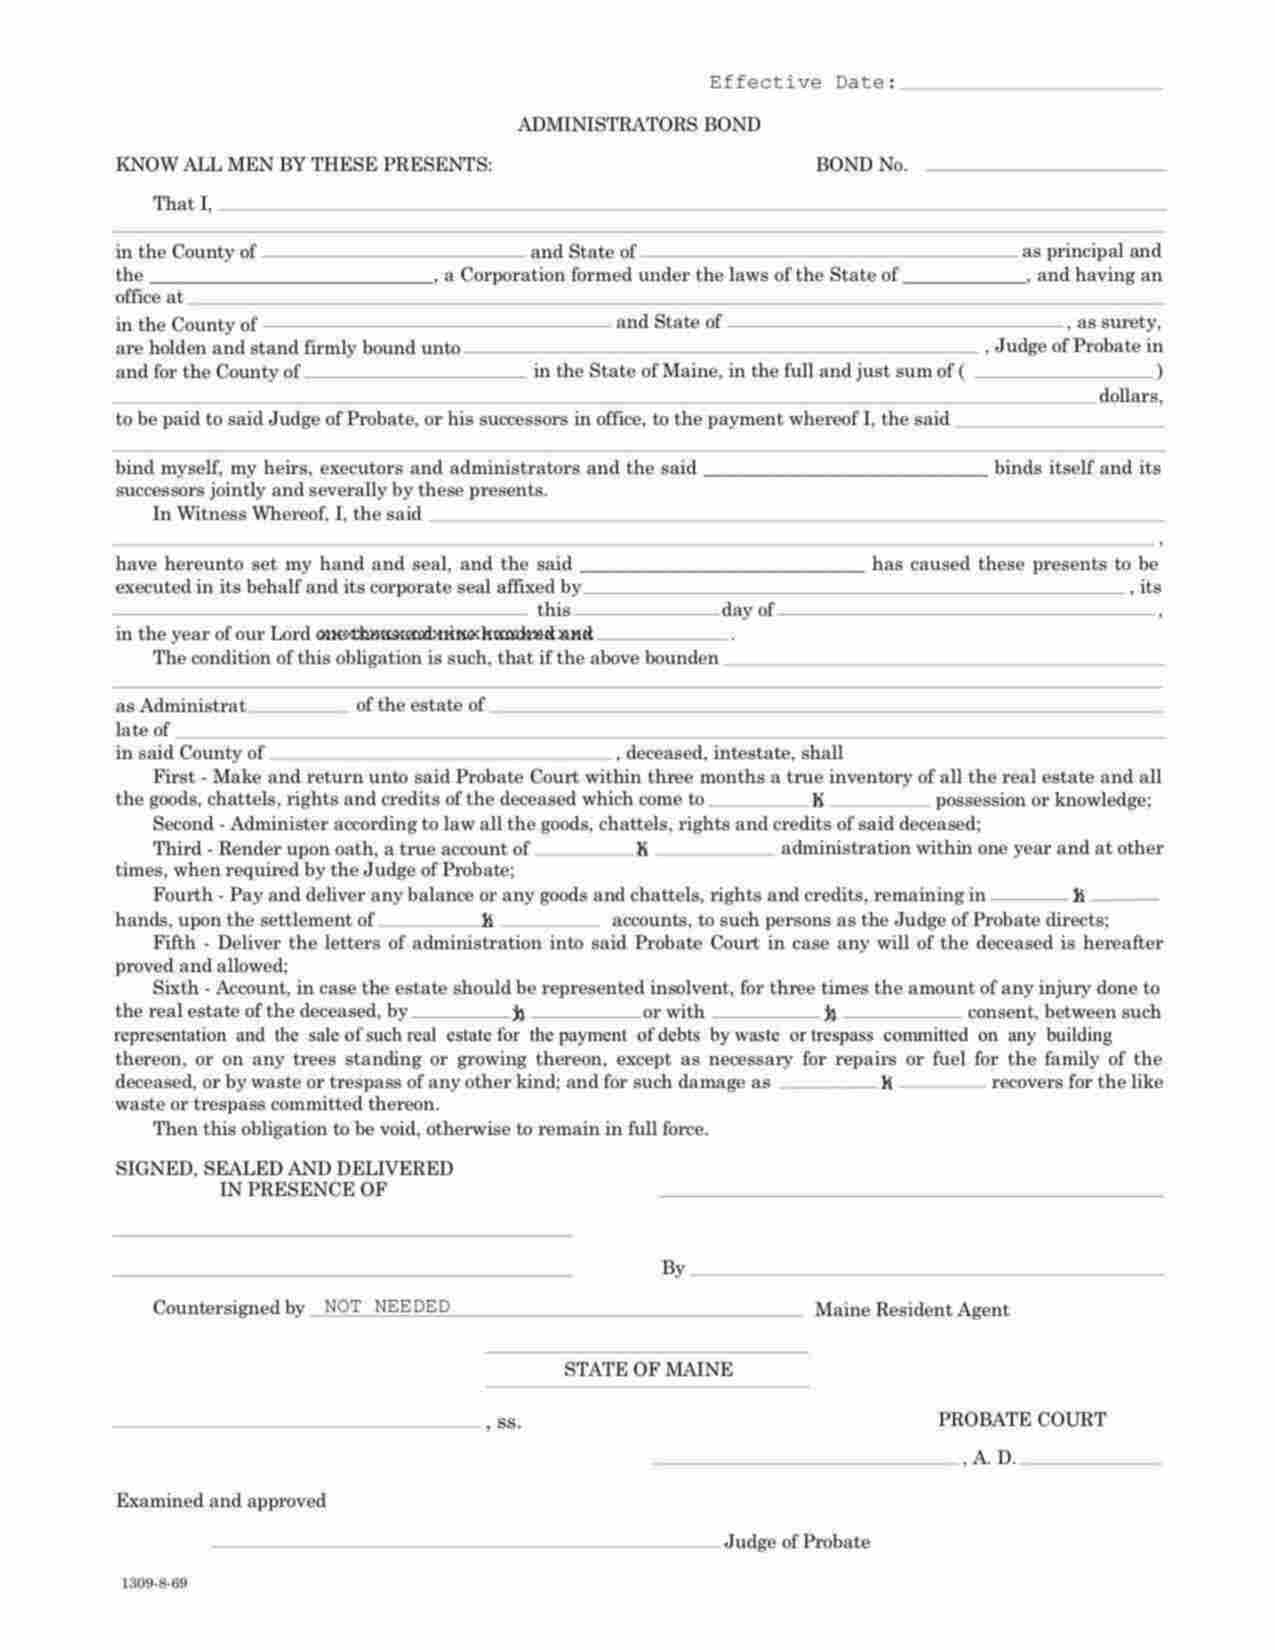 Maine Administrator/Executor Bond Form